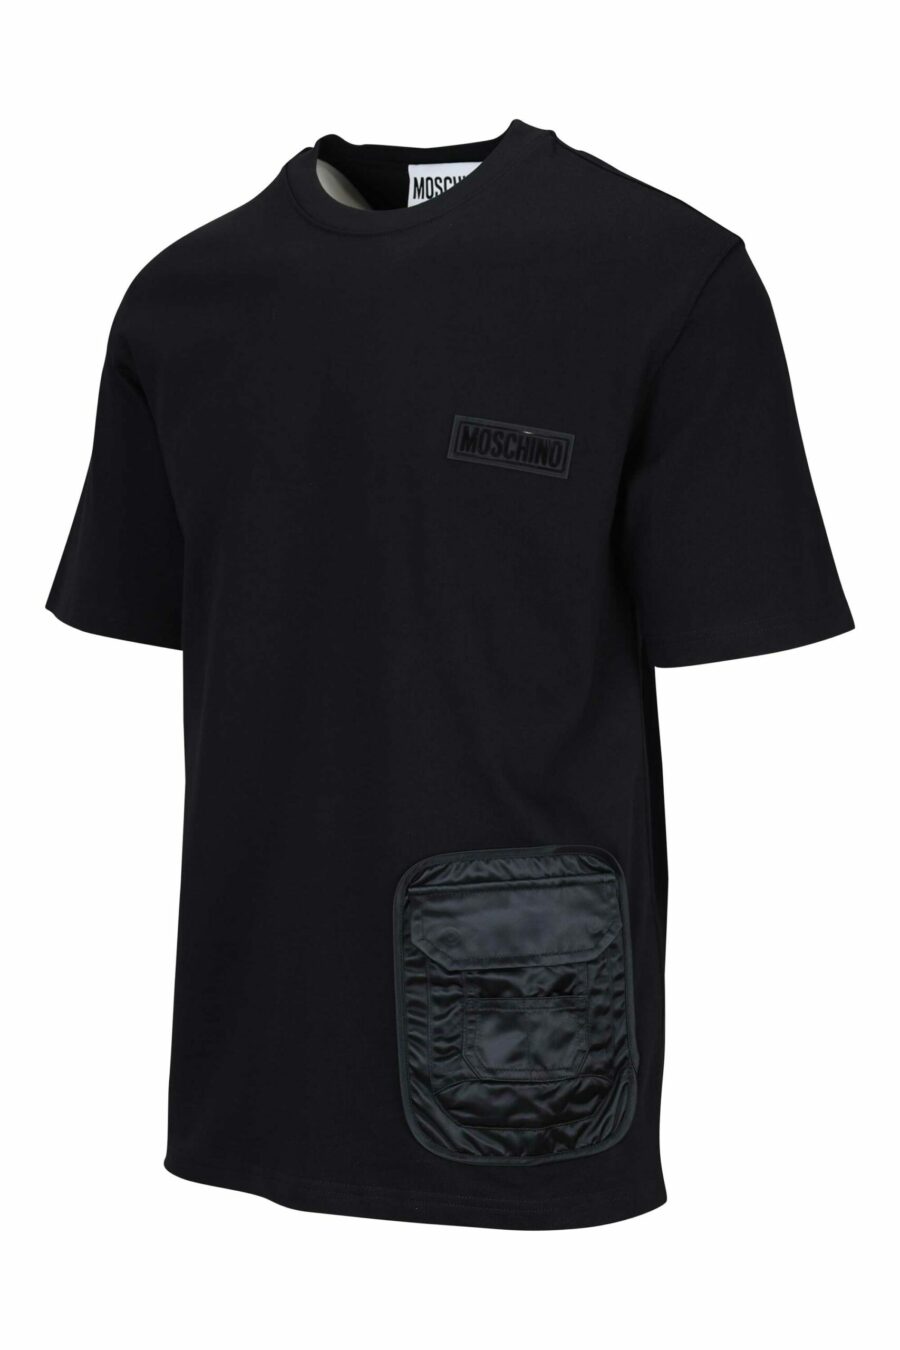 Mistura de t-shirt preta com bolso monocromático e etiqueta com logótipo - 667113452036 1 scaled